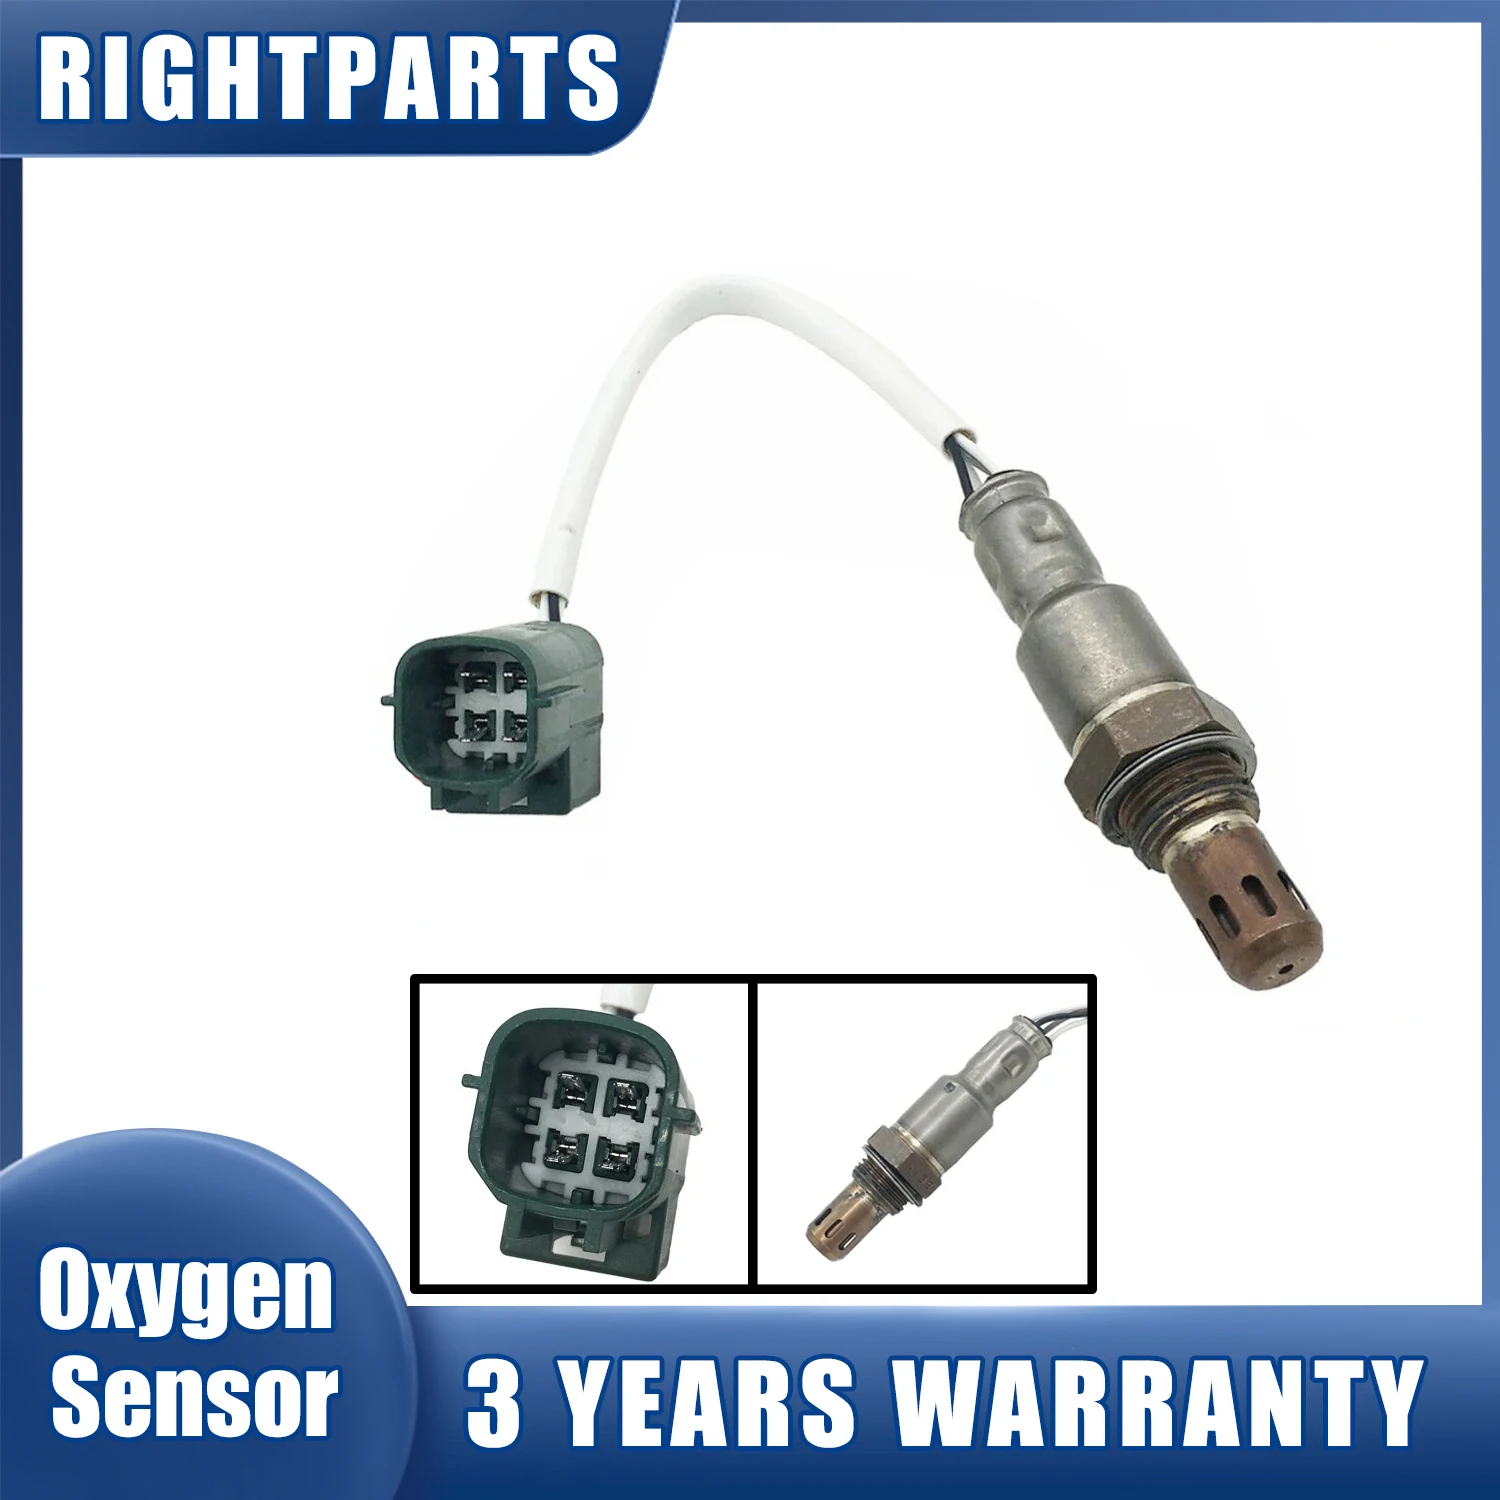 

Oxygen Sensor 226A0-EA200 234-4297 For Nissan Frontier 2.5L 4.0L Pathfinder Xterra 4.0L 2005-2012 NV1500 NV2500 NV3500 4.0L